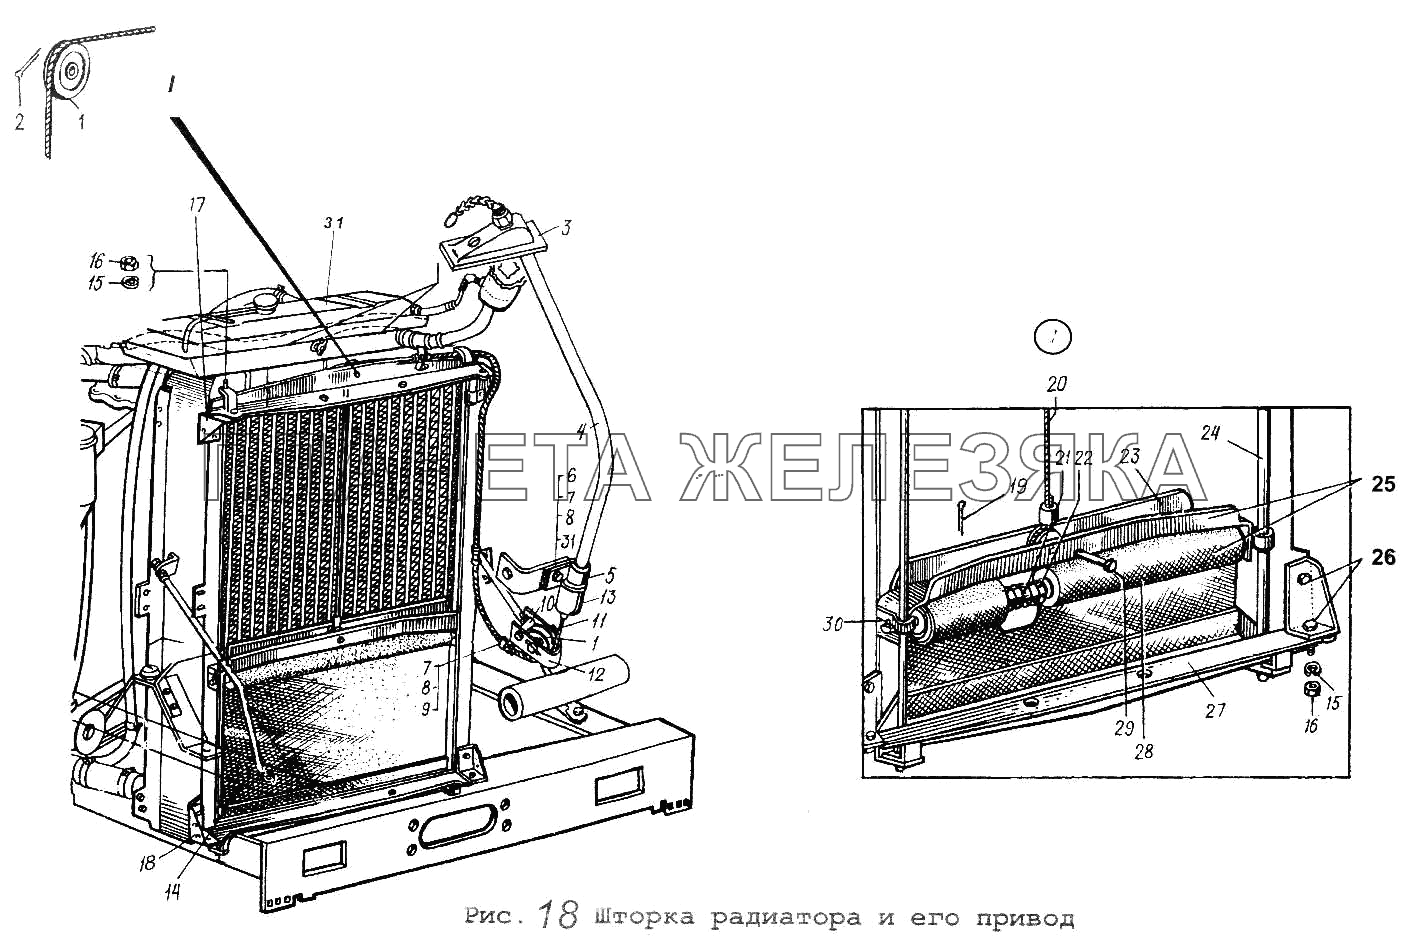 Шторка радиатора и его привод Общий (см. мод-ции)